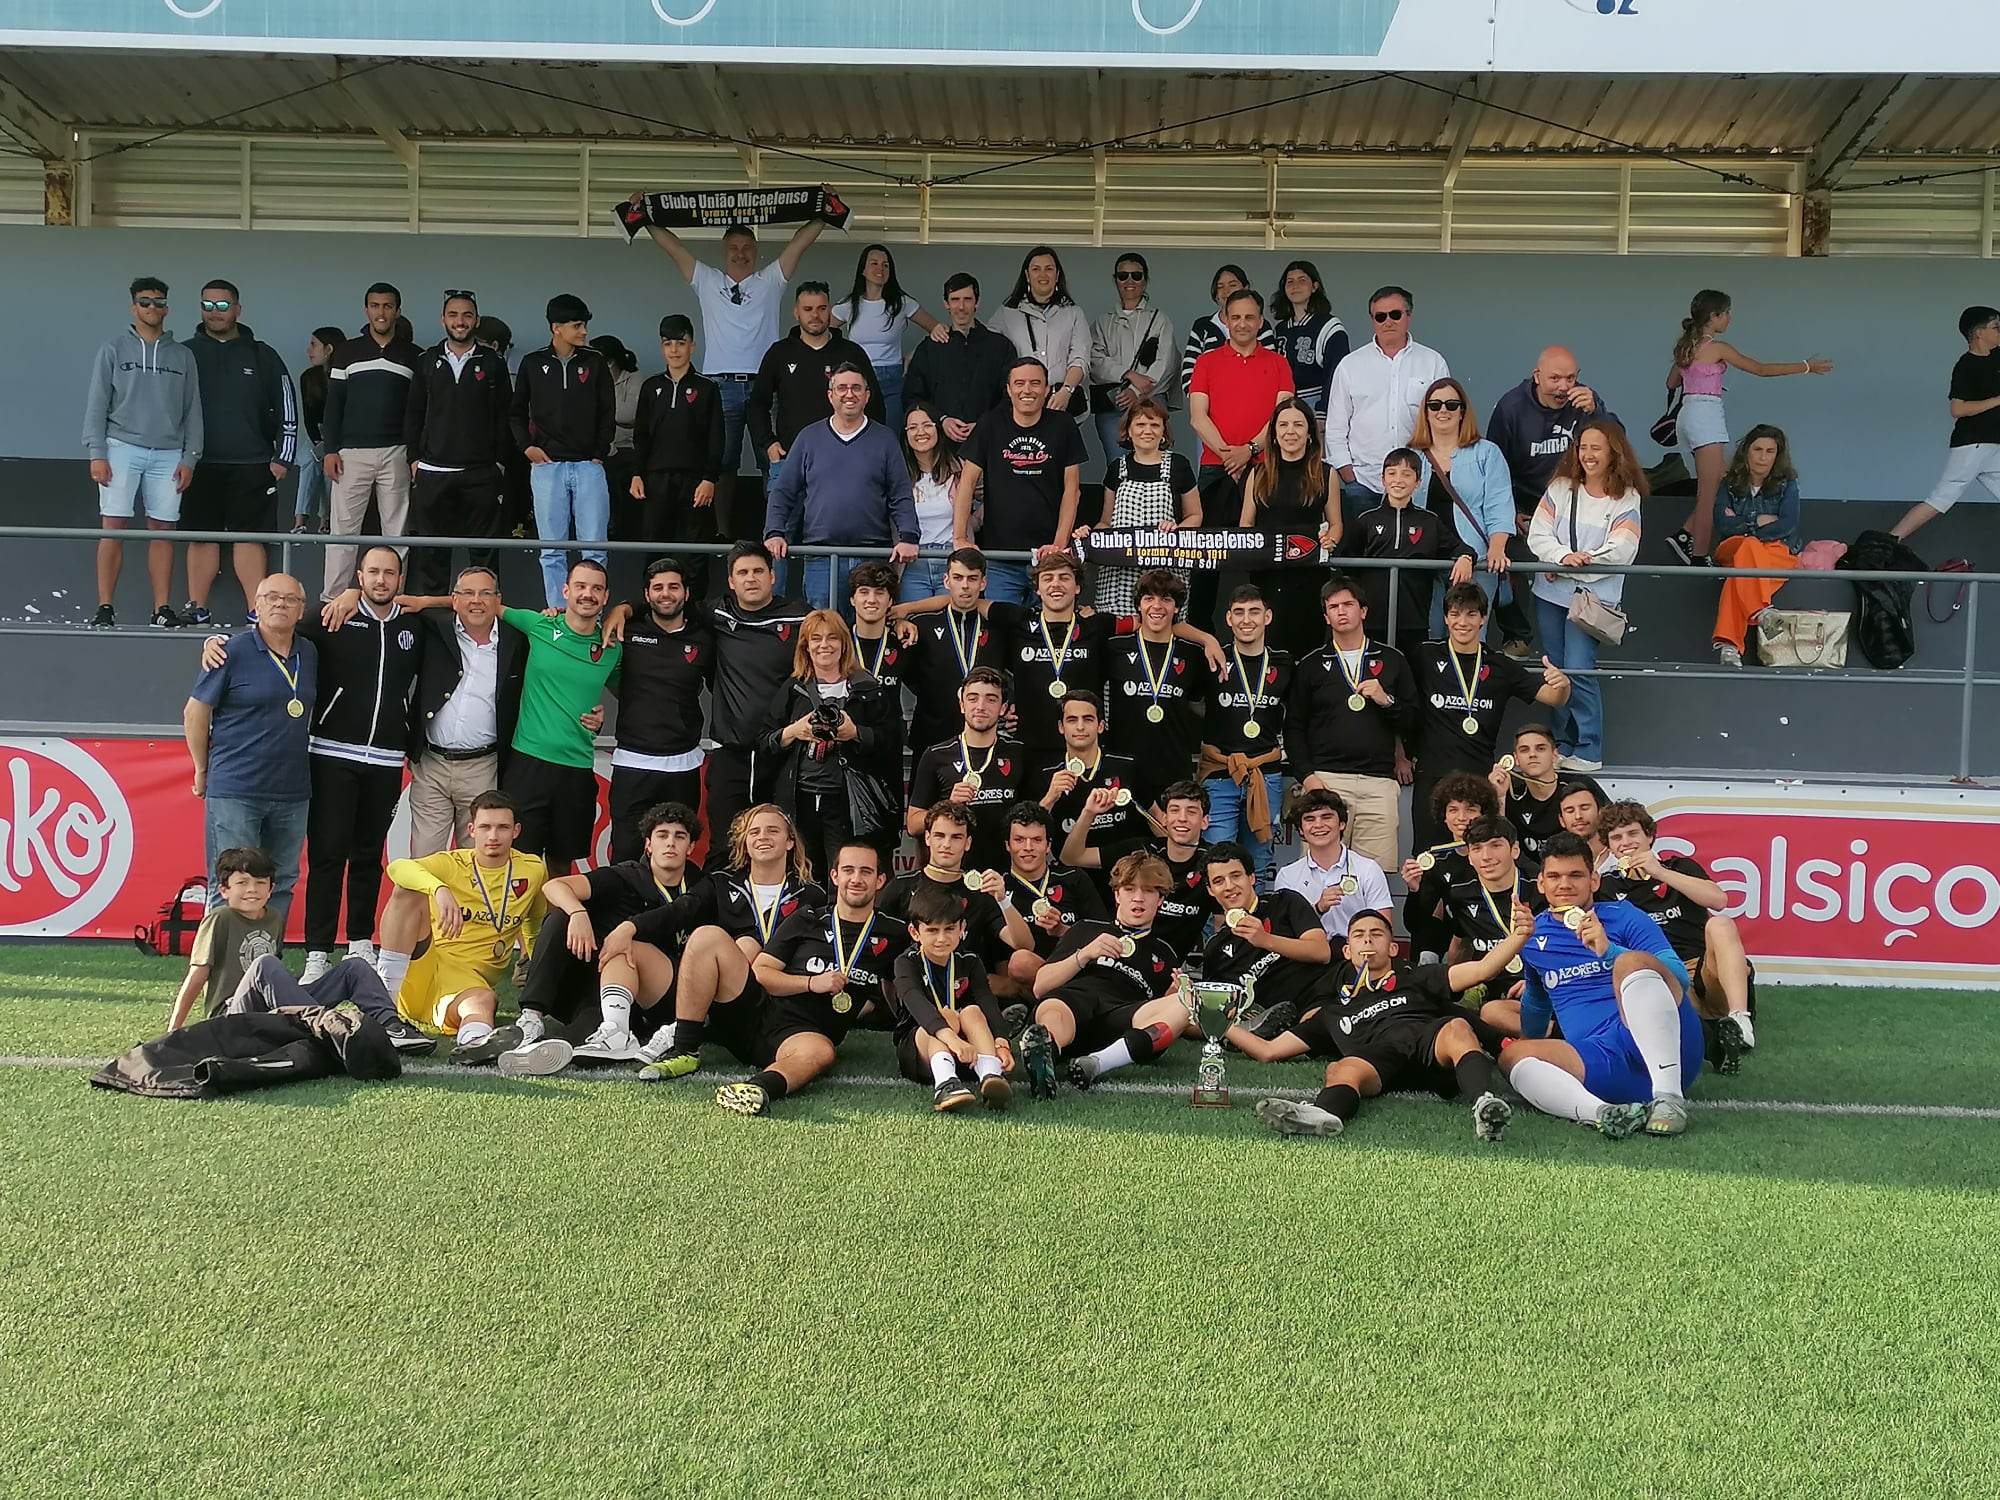 Clube União Micaelense é o vencedor da Taça de São Miguel de Juniores!